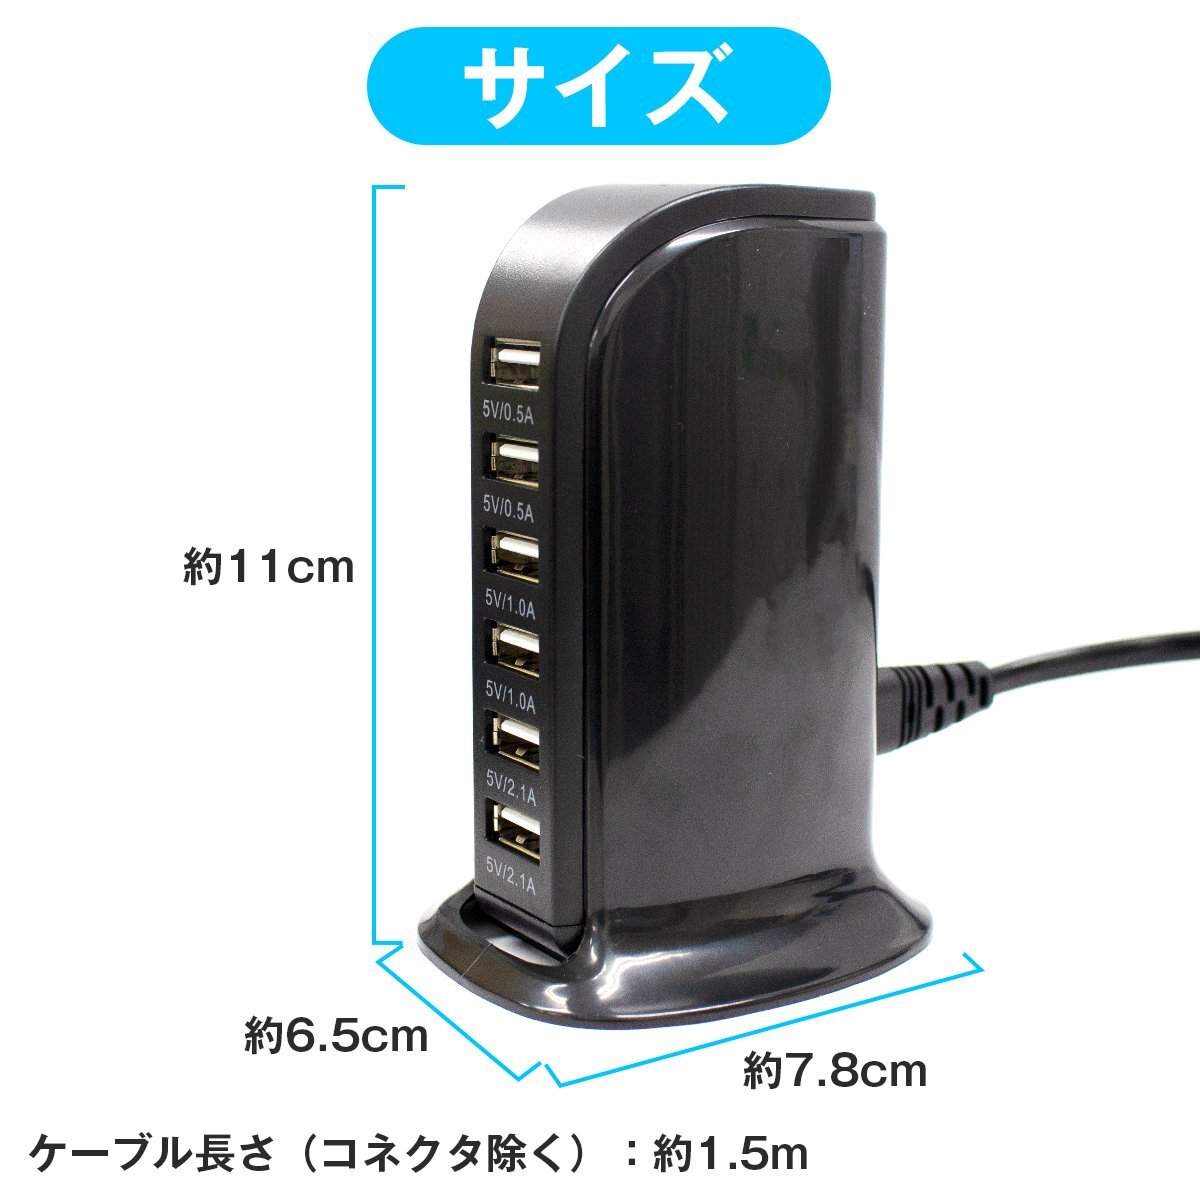 【 новый товар  быстрая доставка 】6 подставка   одновременно   эл. зарядка  возможно  USB зарядное устройство   черный   смартфон  ... 6 порт   iPhone  компактный  